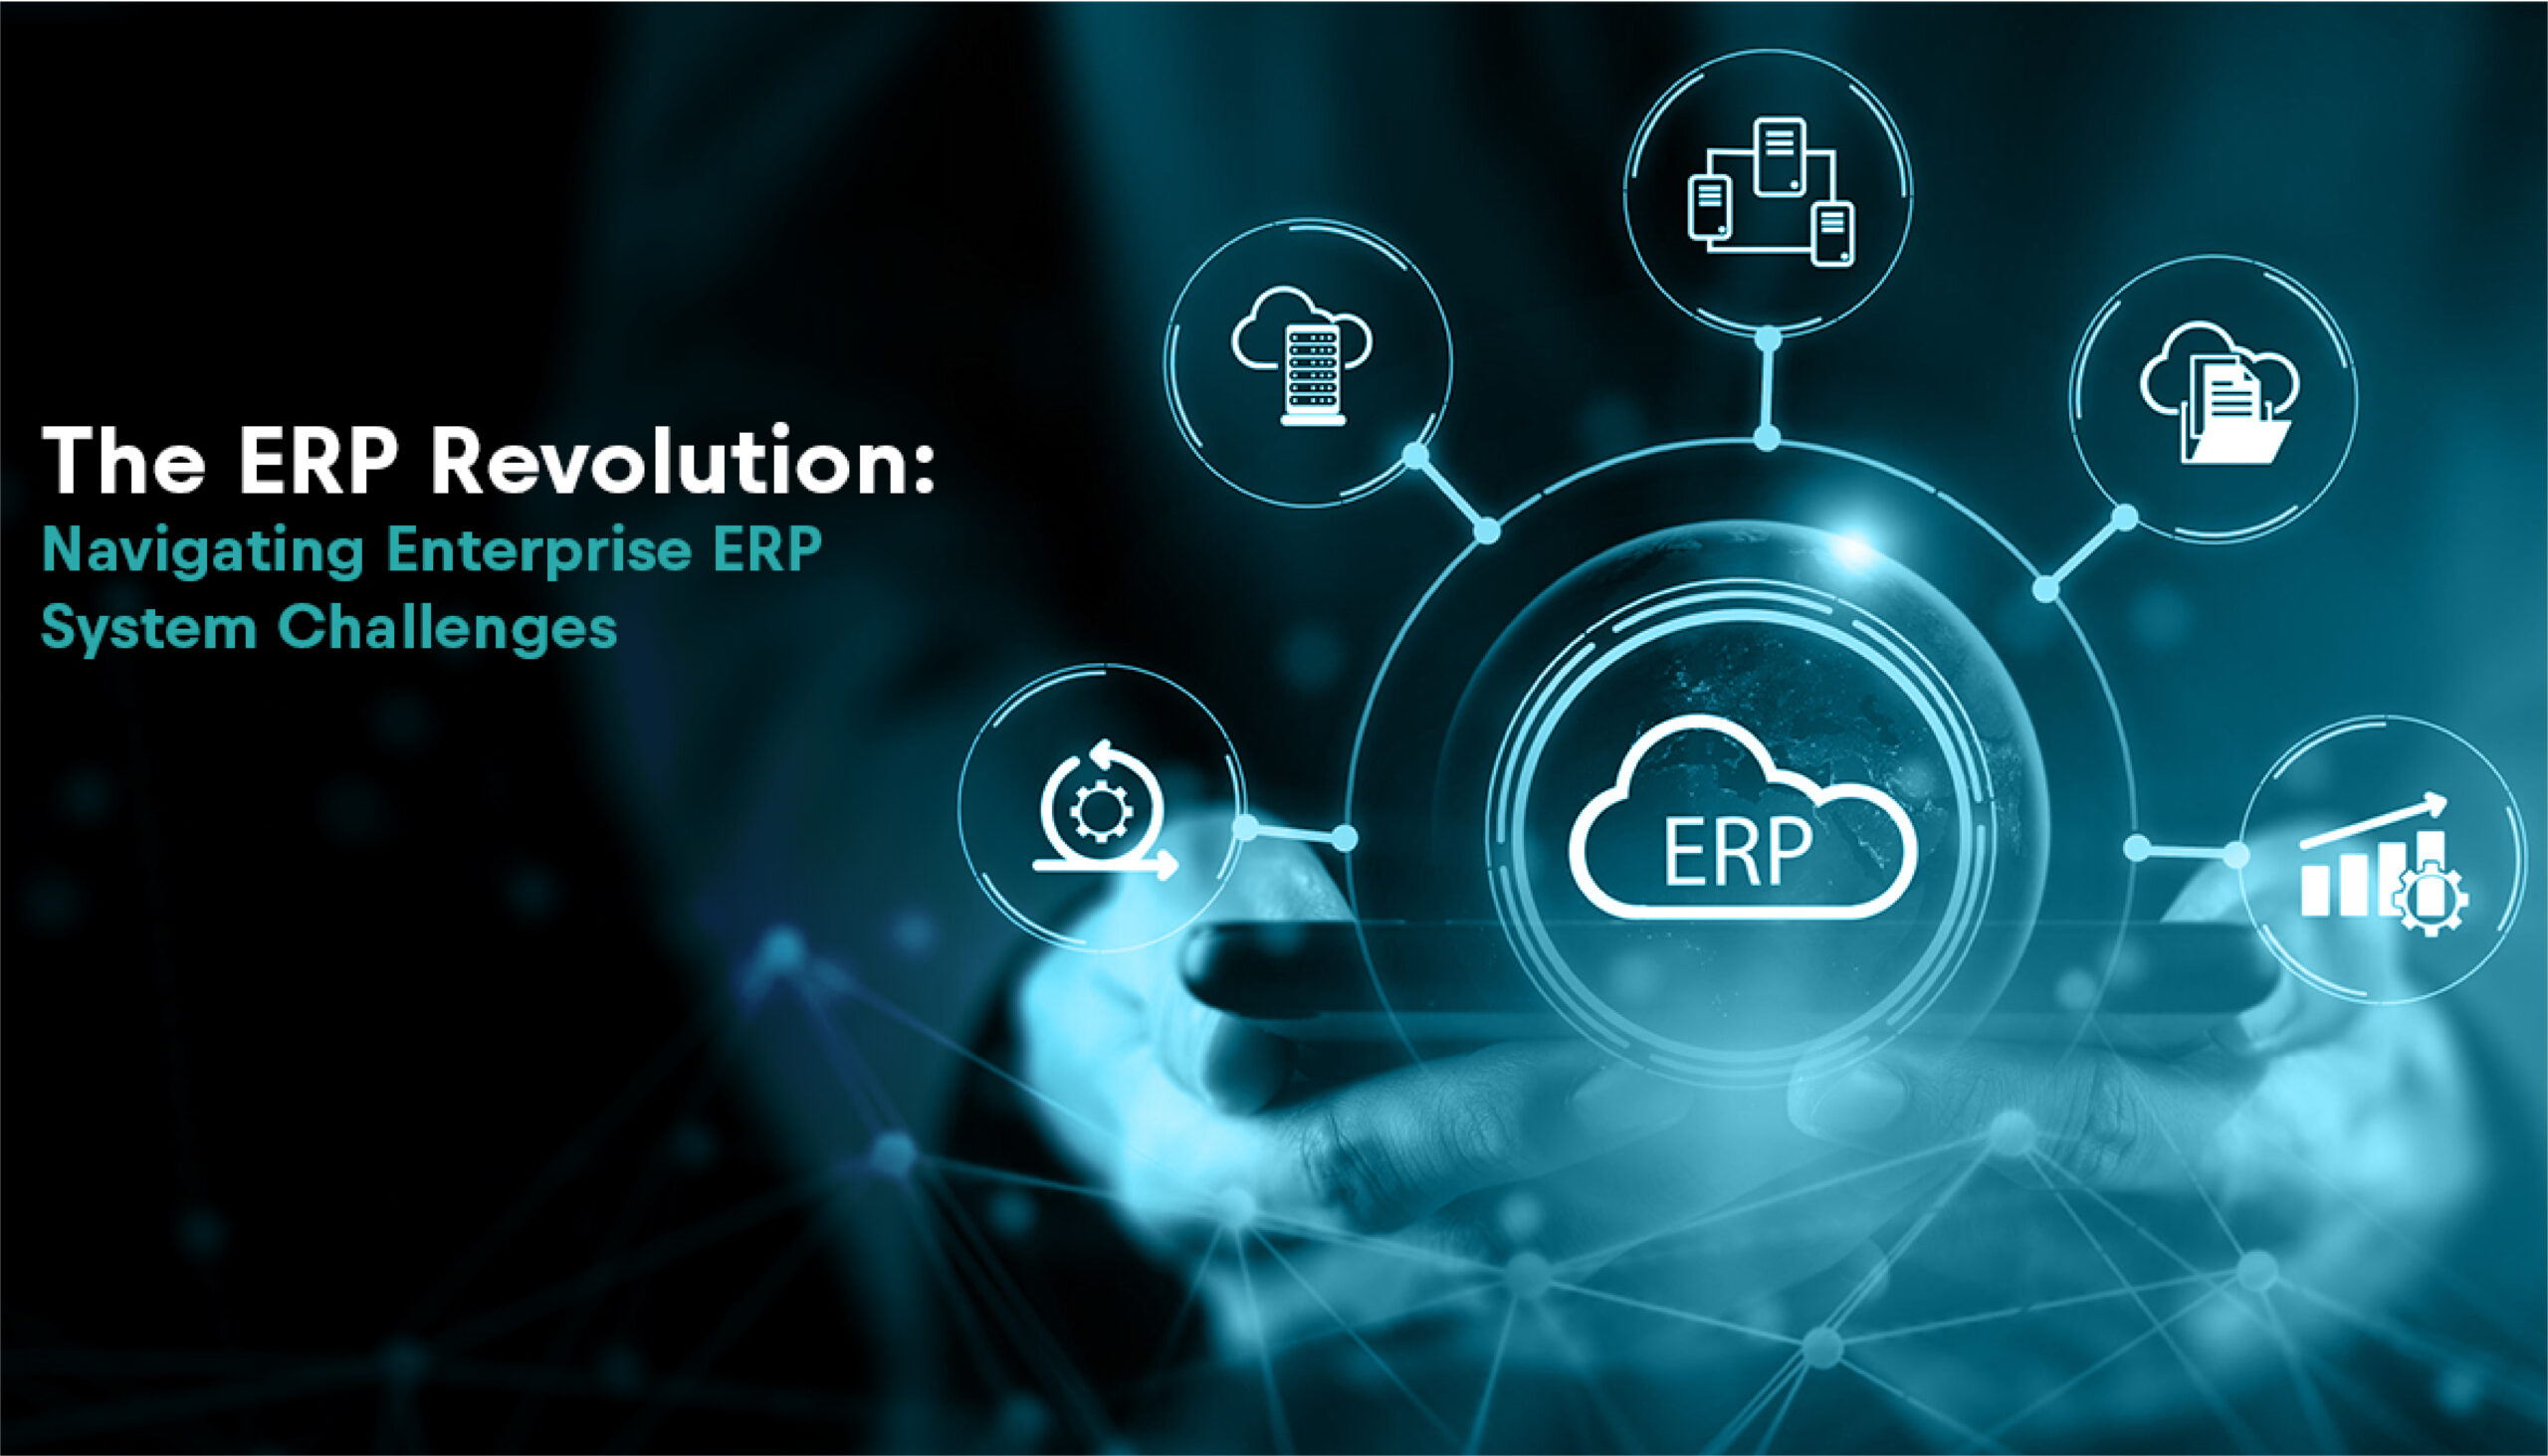 The ERP Revolution: Navigating Enterprise ERP System Challenges